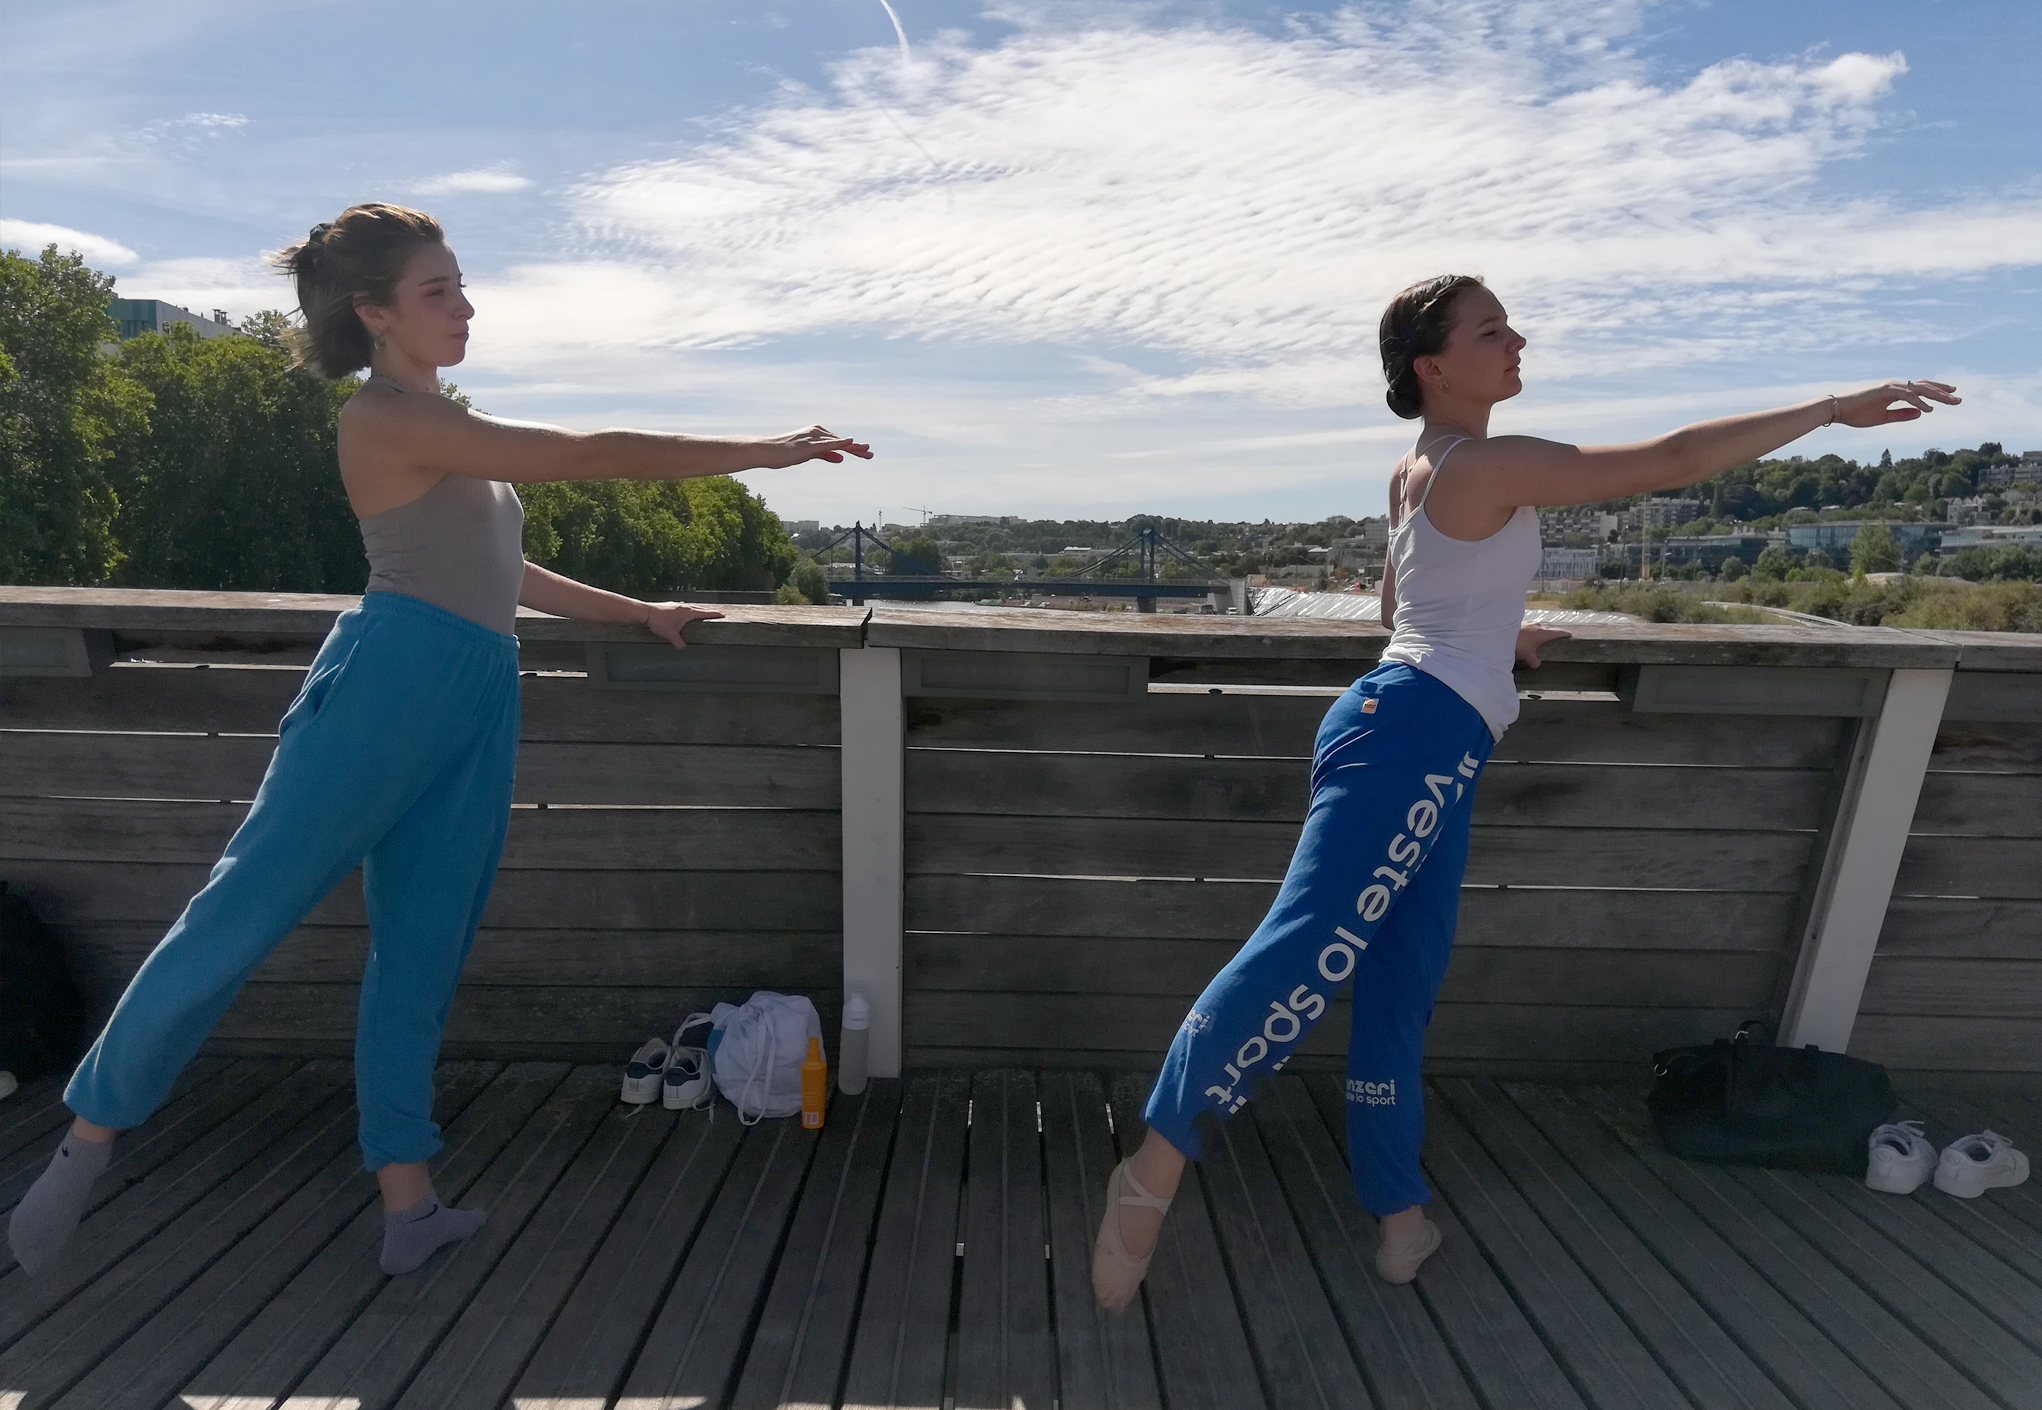 Danse à ciel ouvert - élèves de 3ème cycle de la classe de danse du conservatoire Niedermeyer à Issy-les-Moulineaux (Grand Paris Seine Ouest)